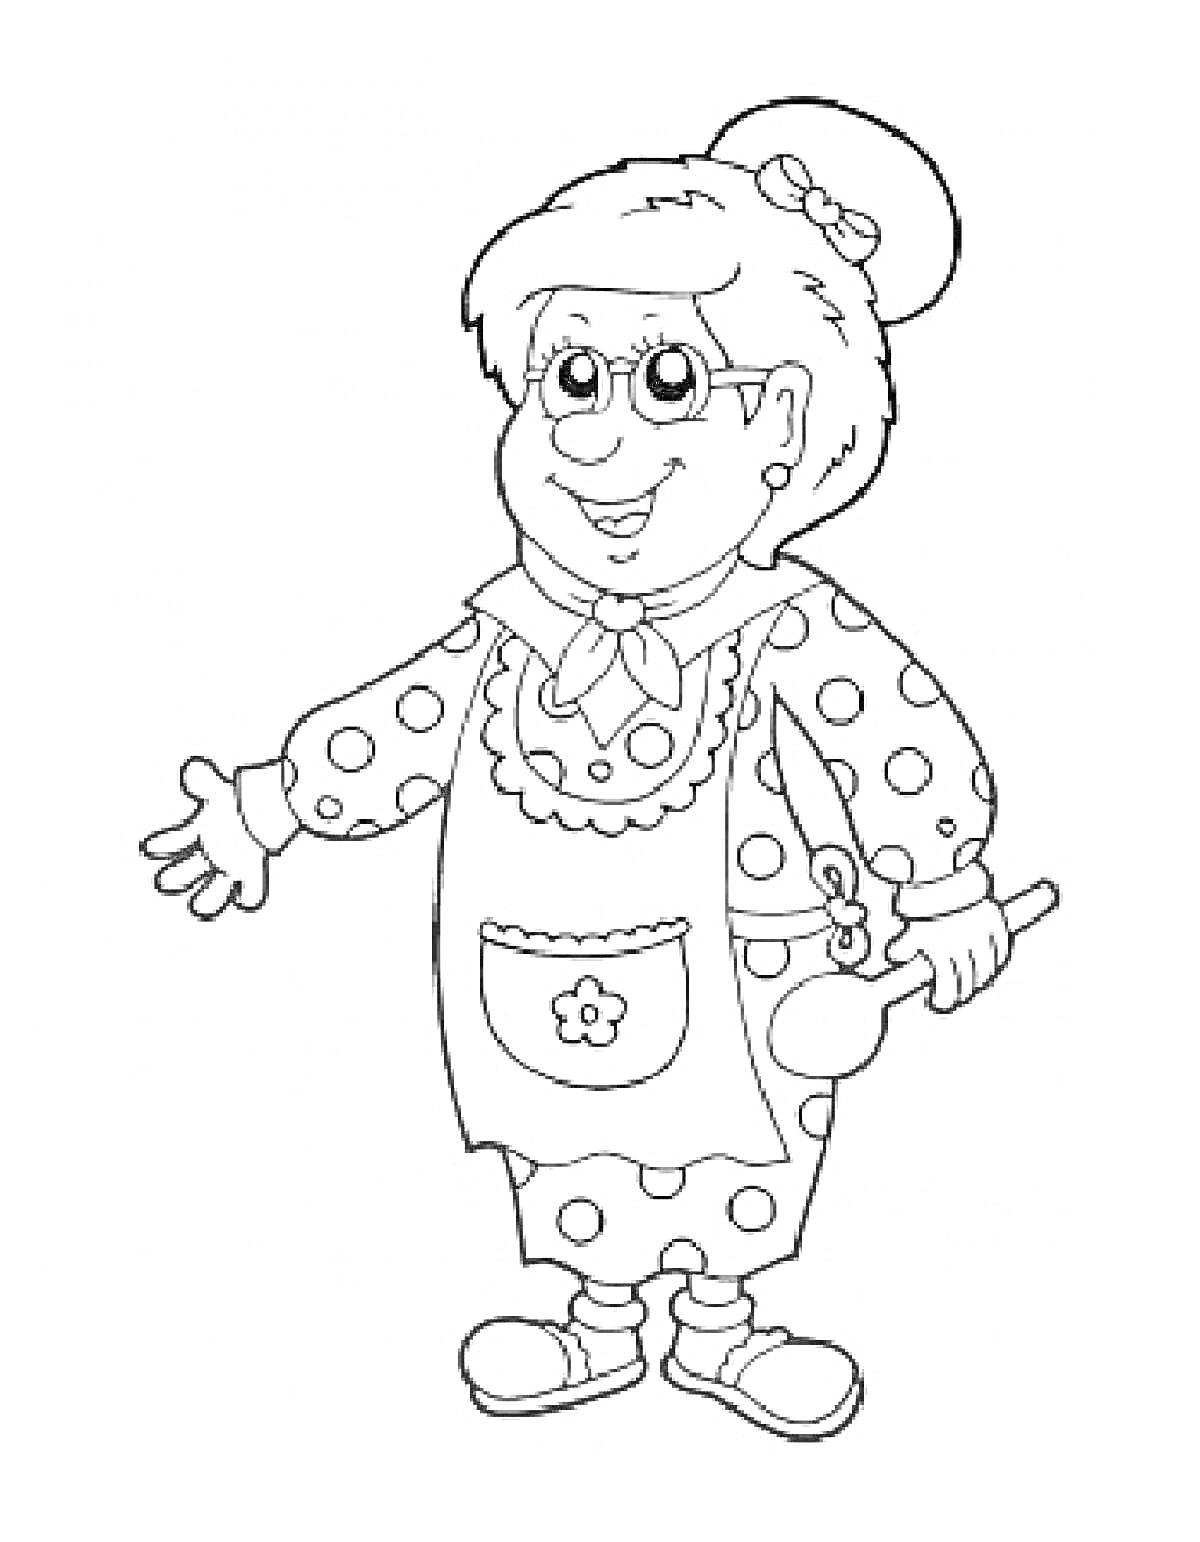 Раскраска Бабушка в платье в горошек и фартуке с ложкой в руке